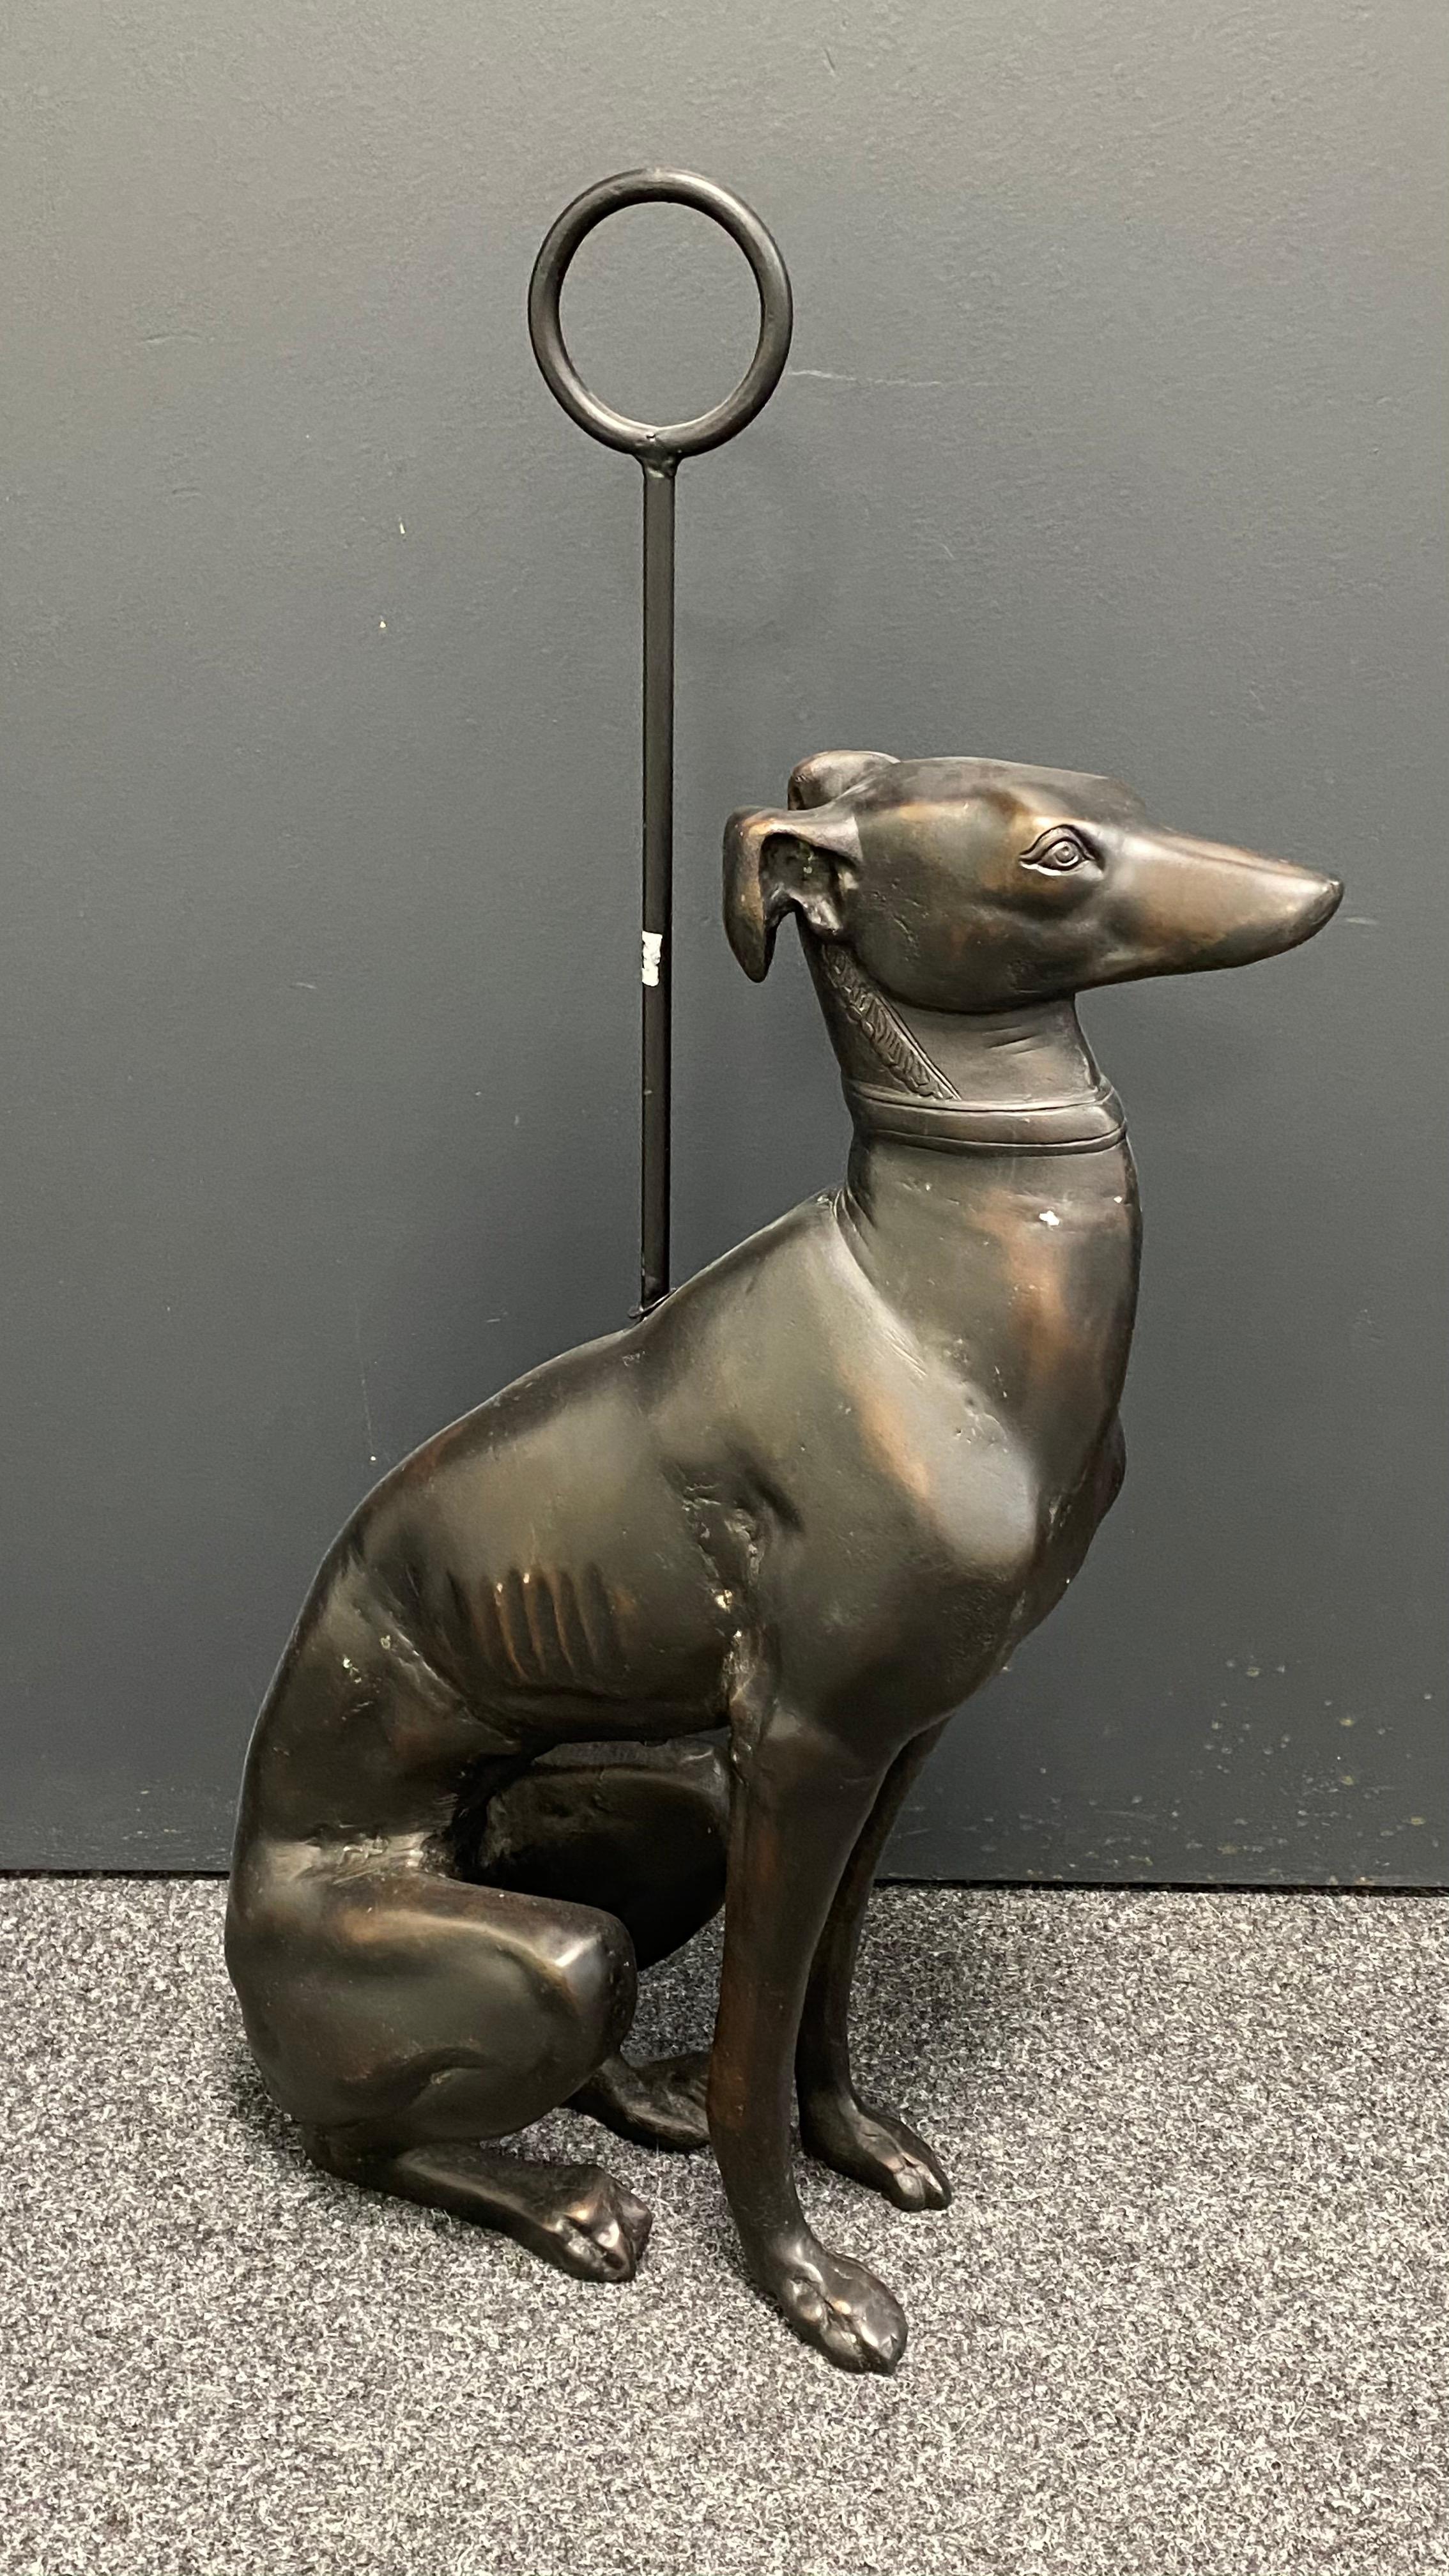 Door Stop Handle Metal Iron Heavy Whippet Dog Pet Home Ornament Décor Doorstop 